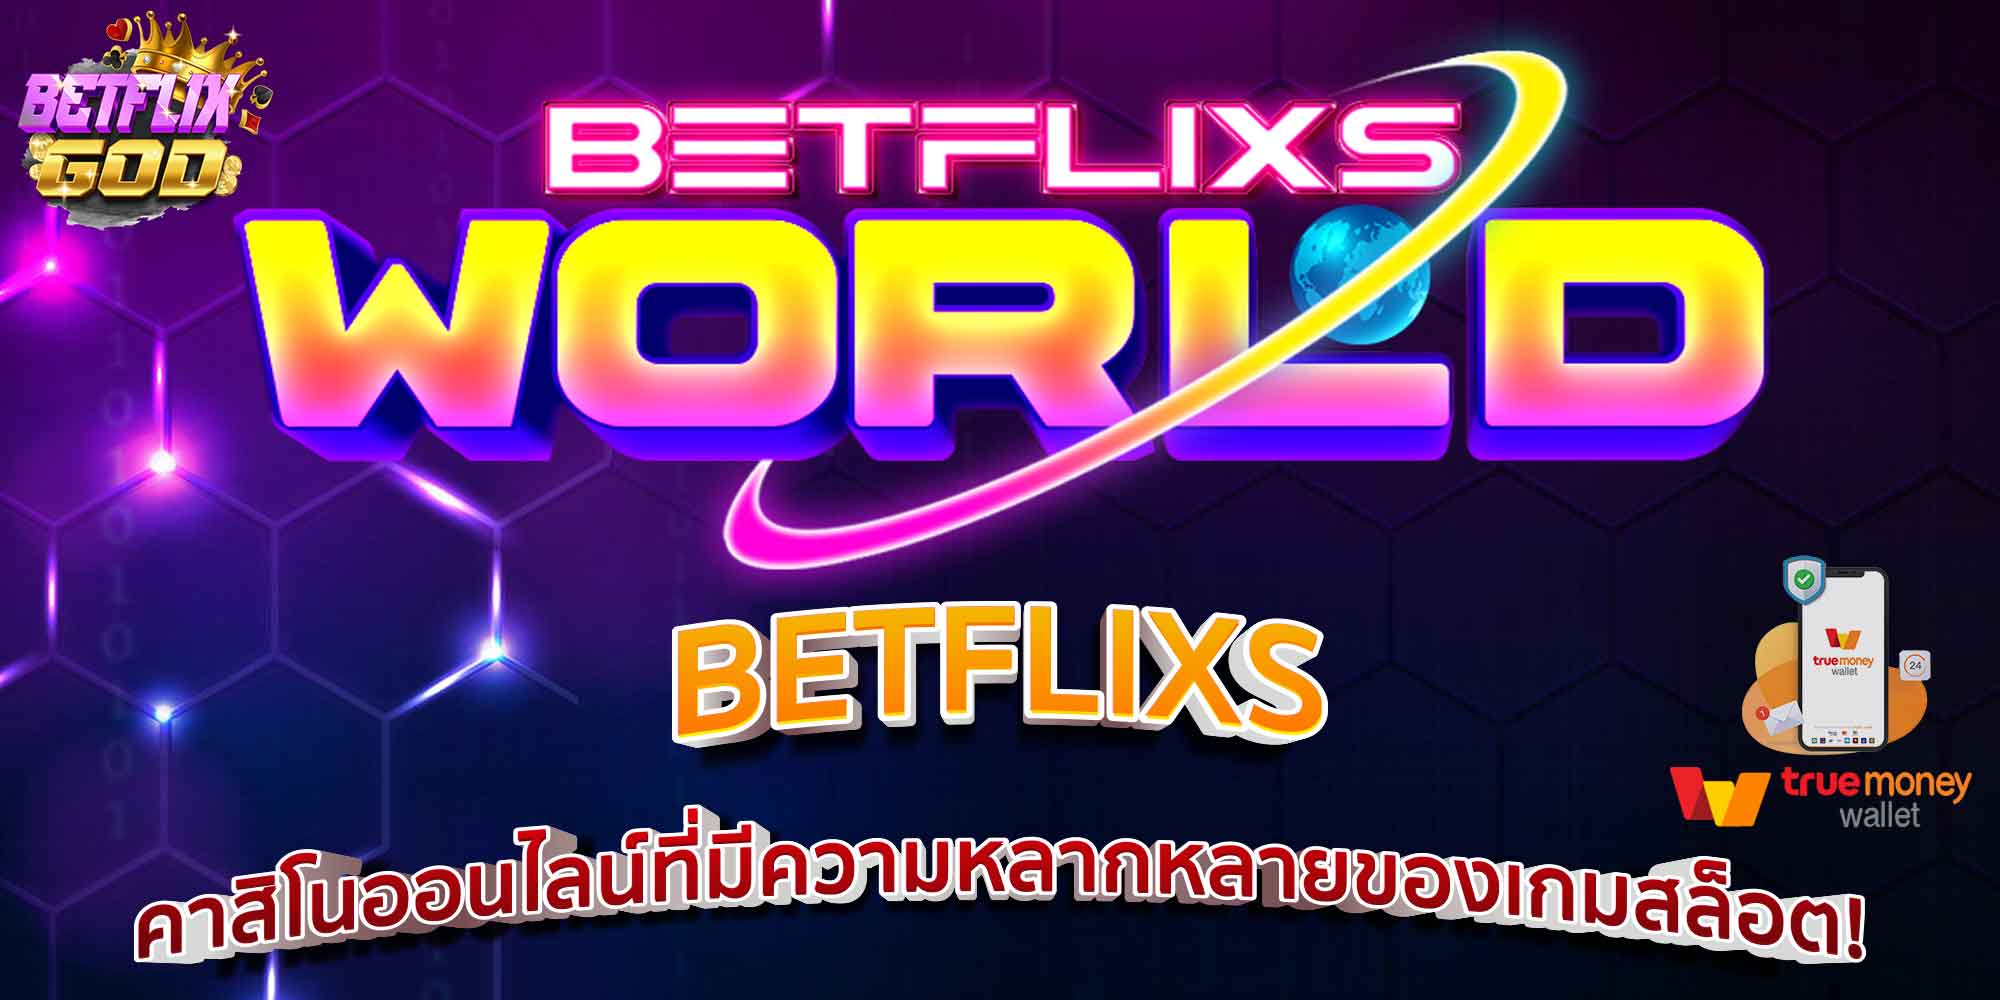 BETFLIXS คาสิโนออนไลน์ที่มีความหลากหลายของเกมสล็อต!